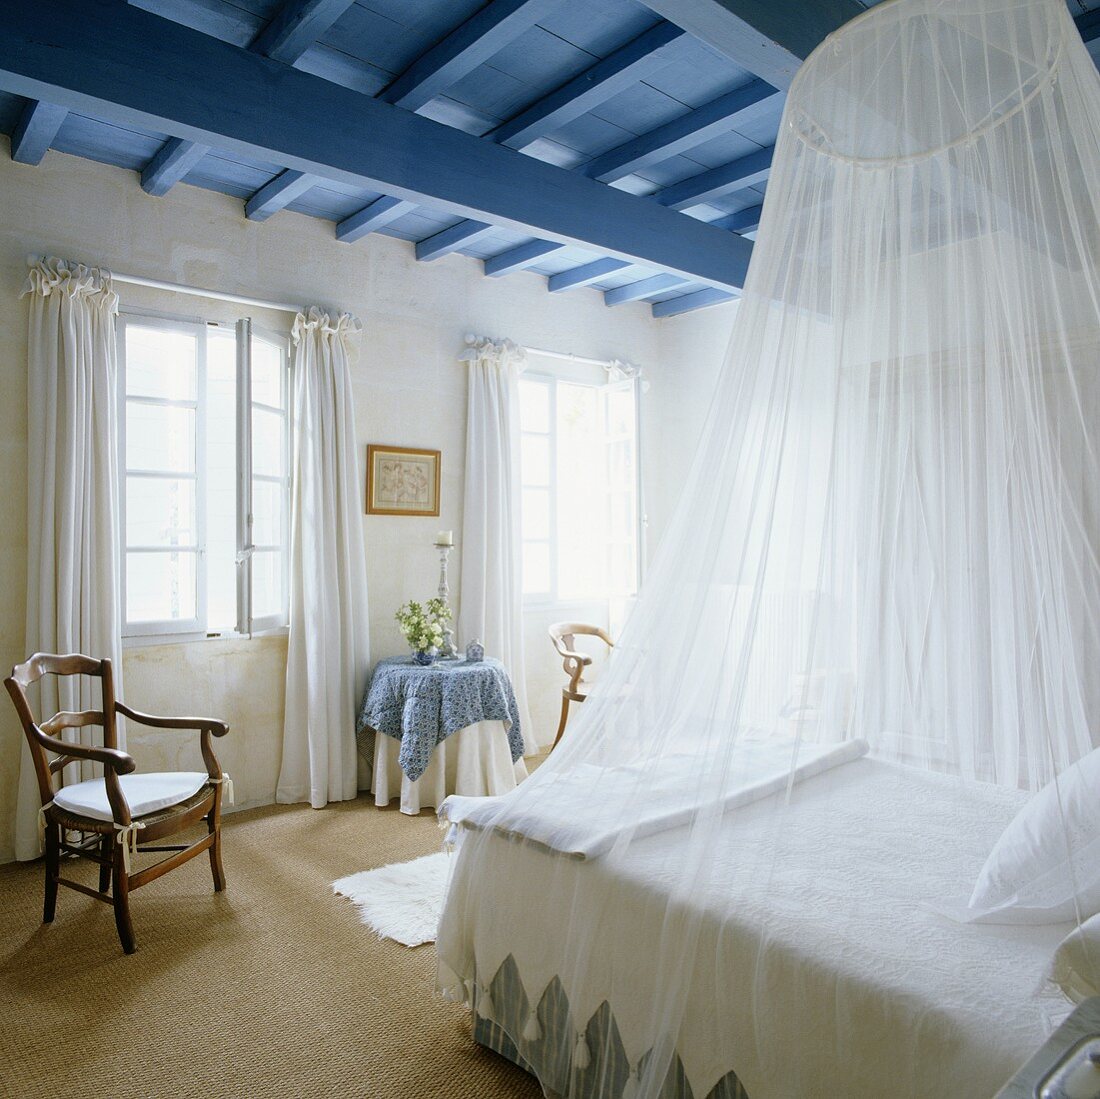 Weisser Himmel über französisches Bett unter blauer Holzdecke im ländlichen Schlafraum